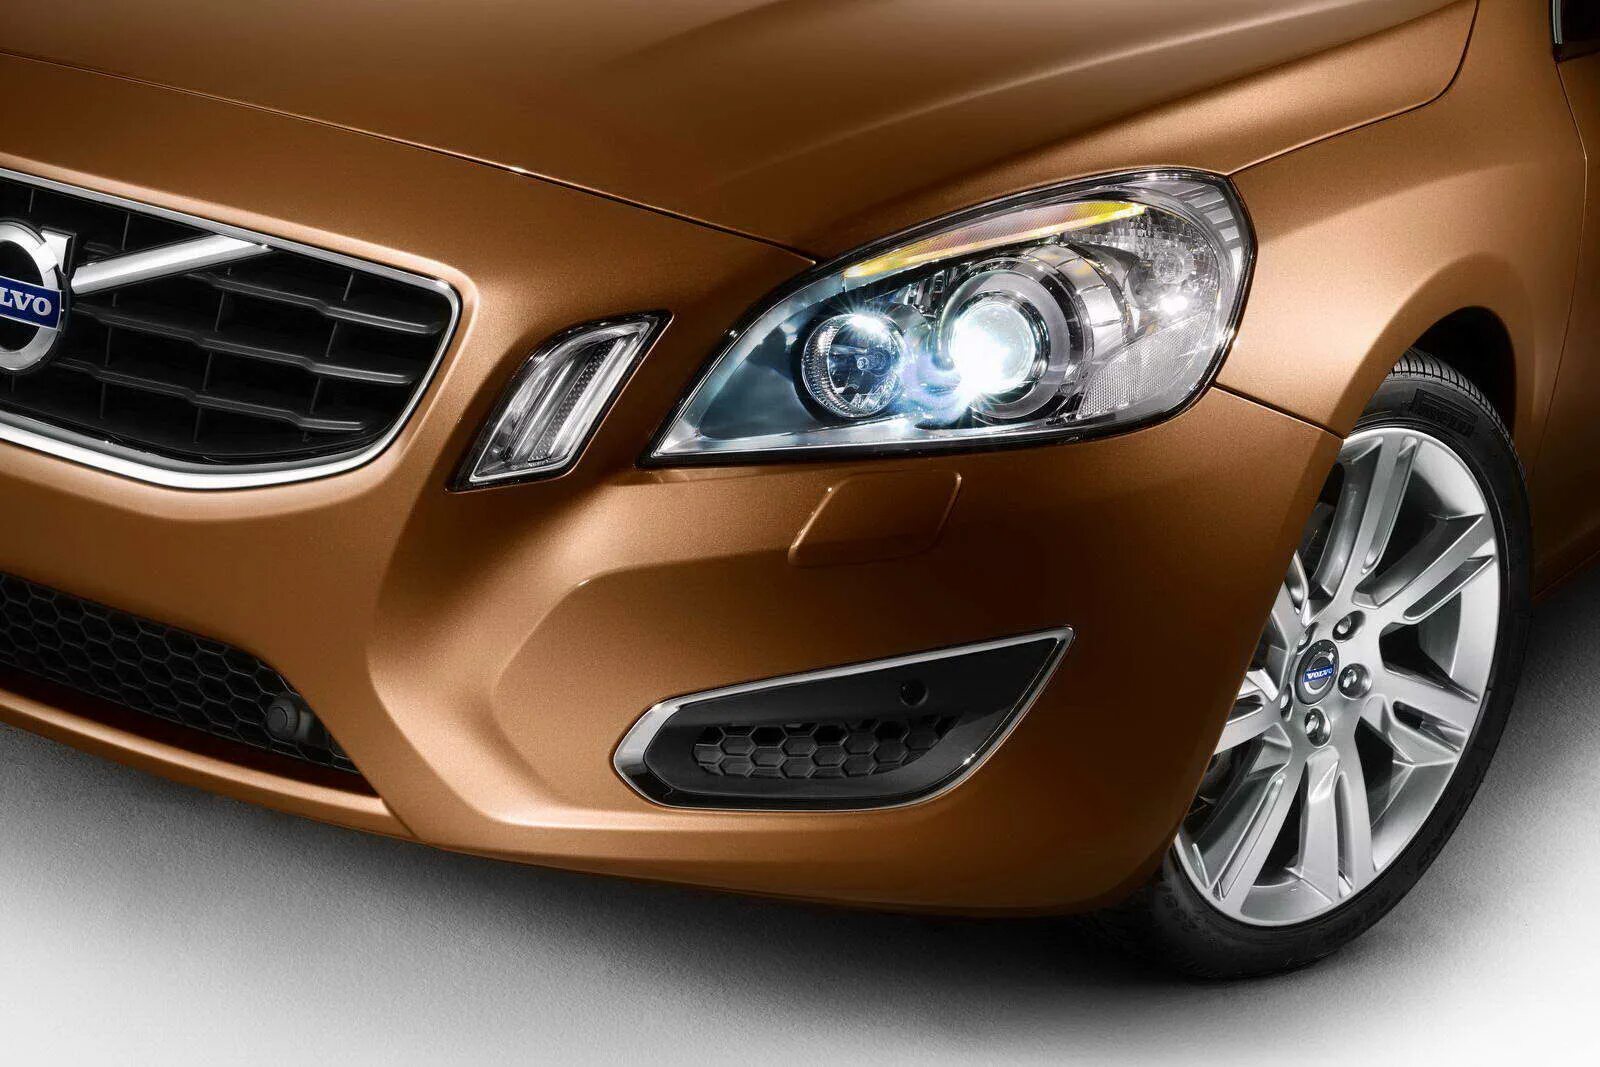 Ремонт volvo s60. Volvo s60 2011. Вольво с60 2011. Volvo s60 vibrant Copper. Volvo s60 mk2.